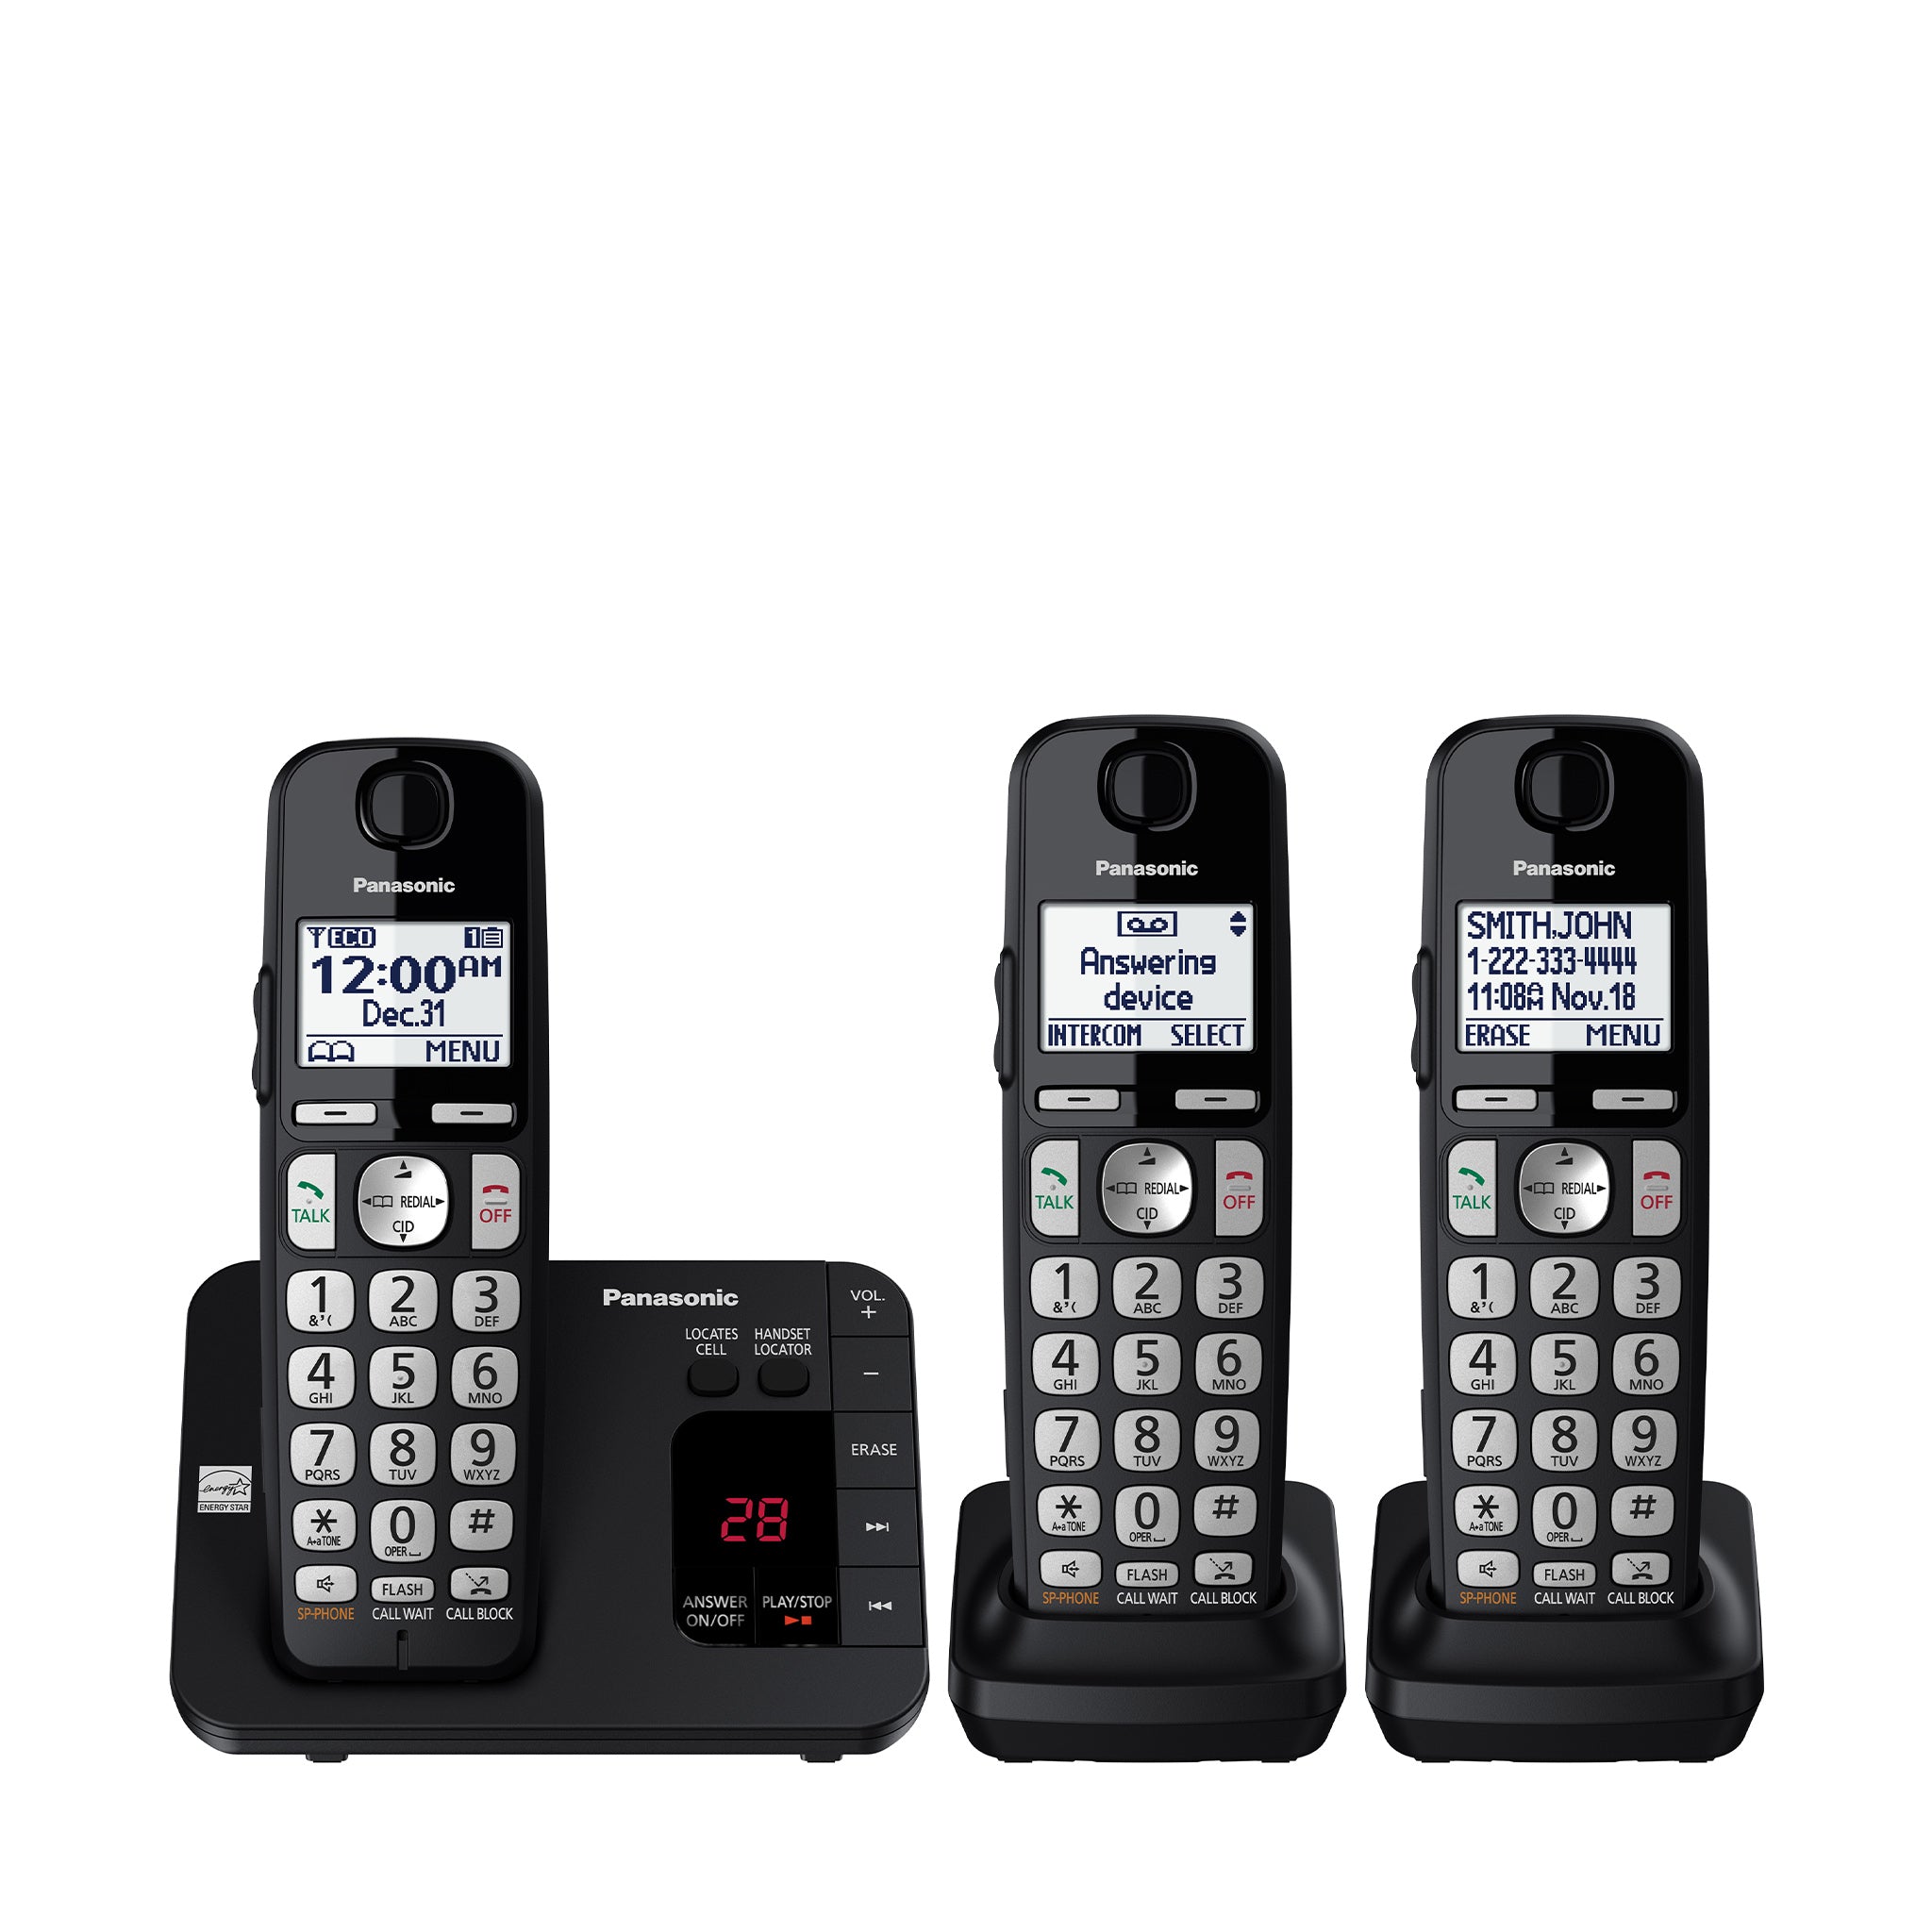 Téléphone sans fil - Série KX-TGE43x